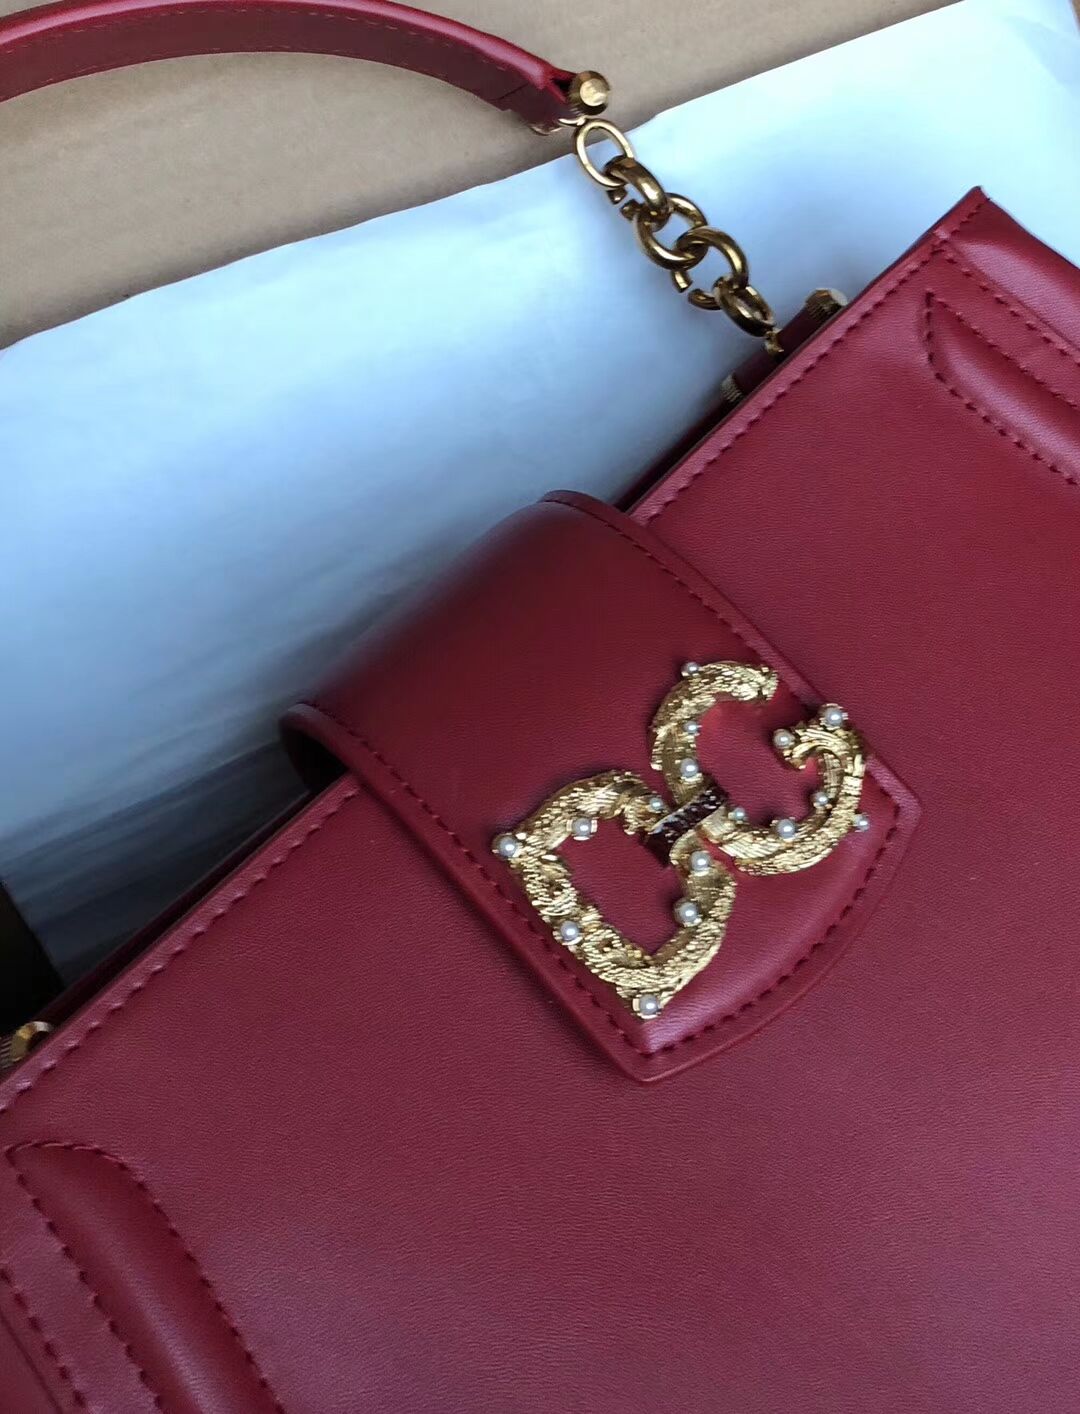 Dolce & Gabbana Origianl Leather Bag 4918 Burgundy